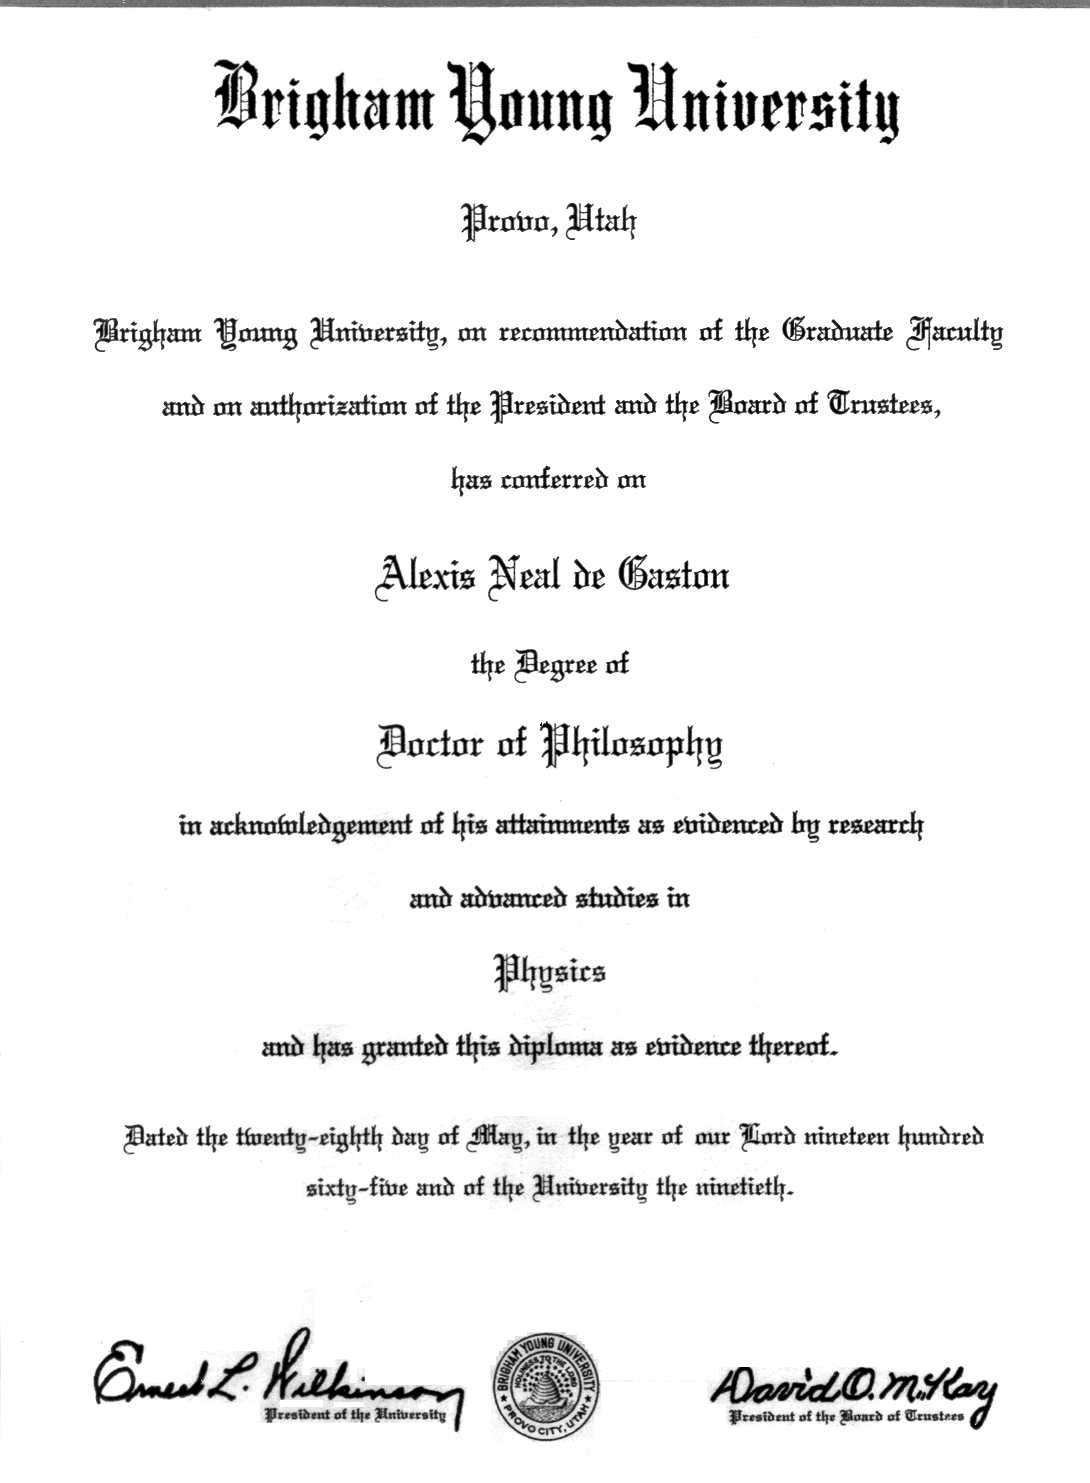 http://www.degaston.org/Resume/65  5 28  Neal PhD in Physics fr BYU 150dpi.